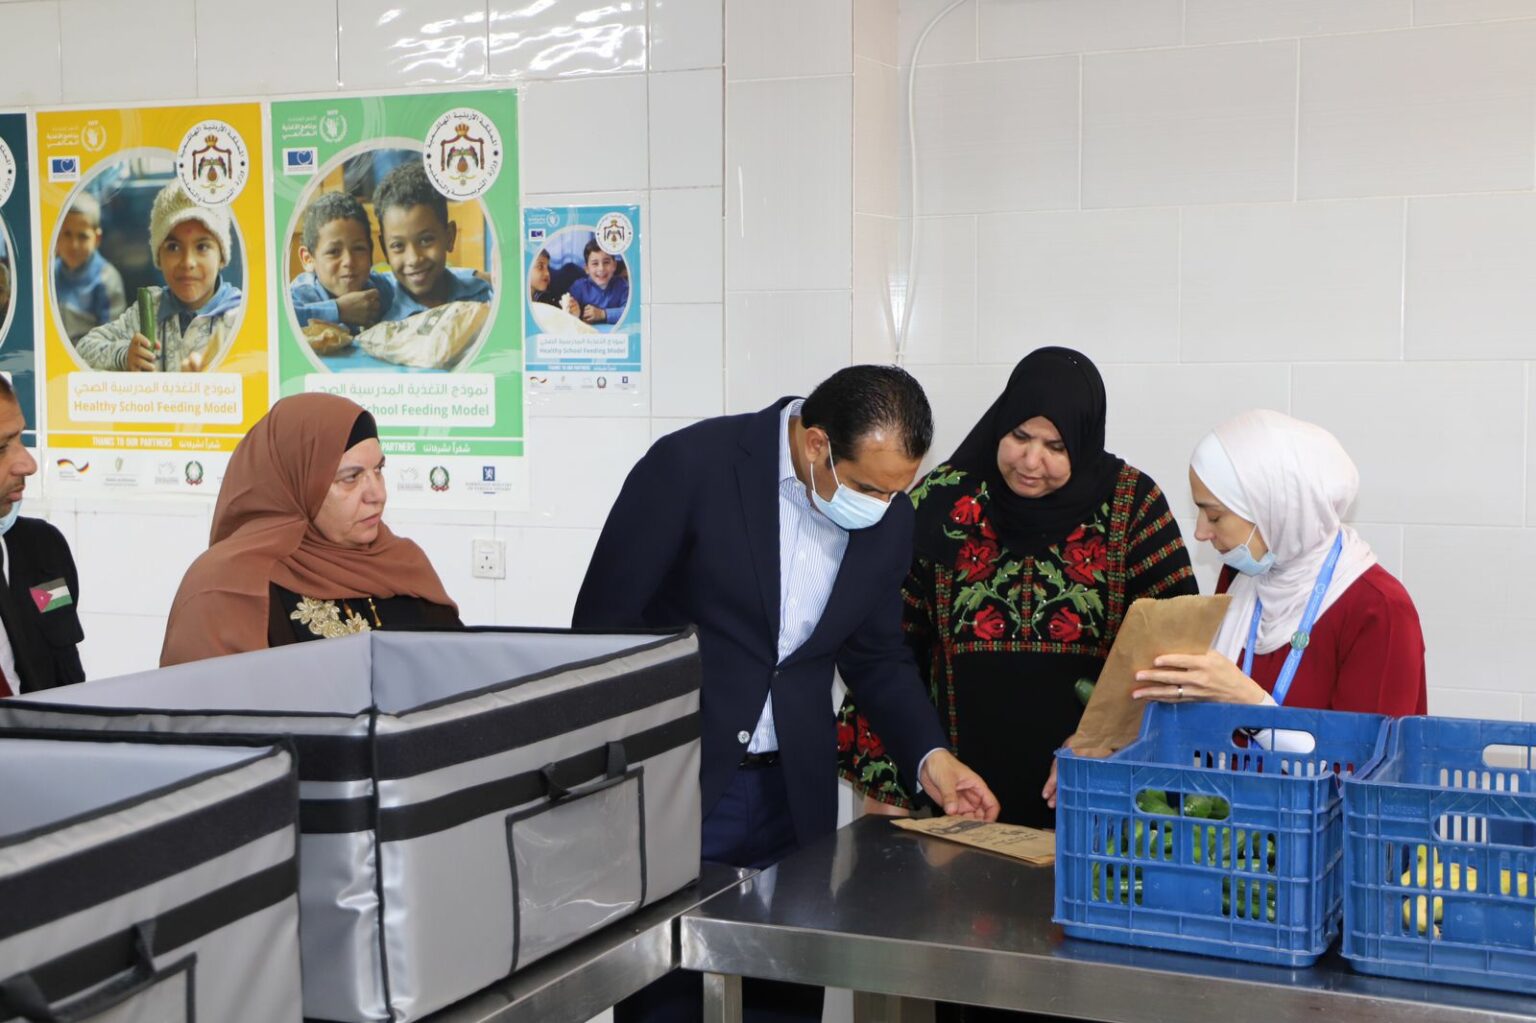 البرنامج الوطني للتغذية المدرسية يقدم وجبات لـ 520 ألف طالب